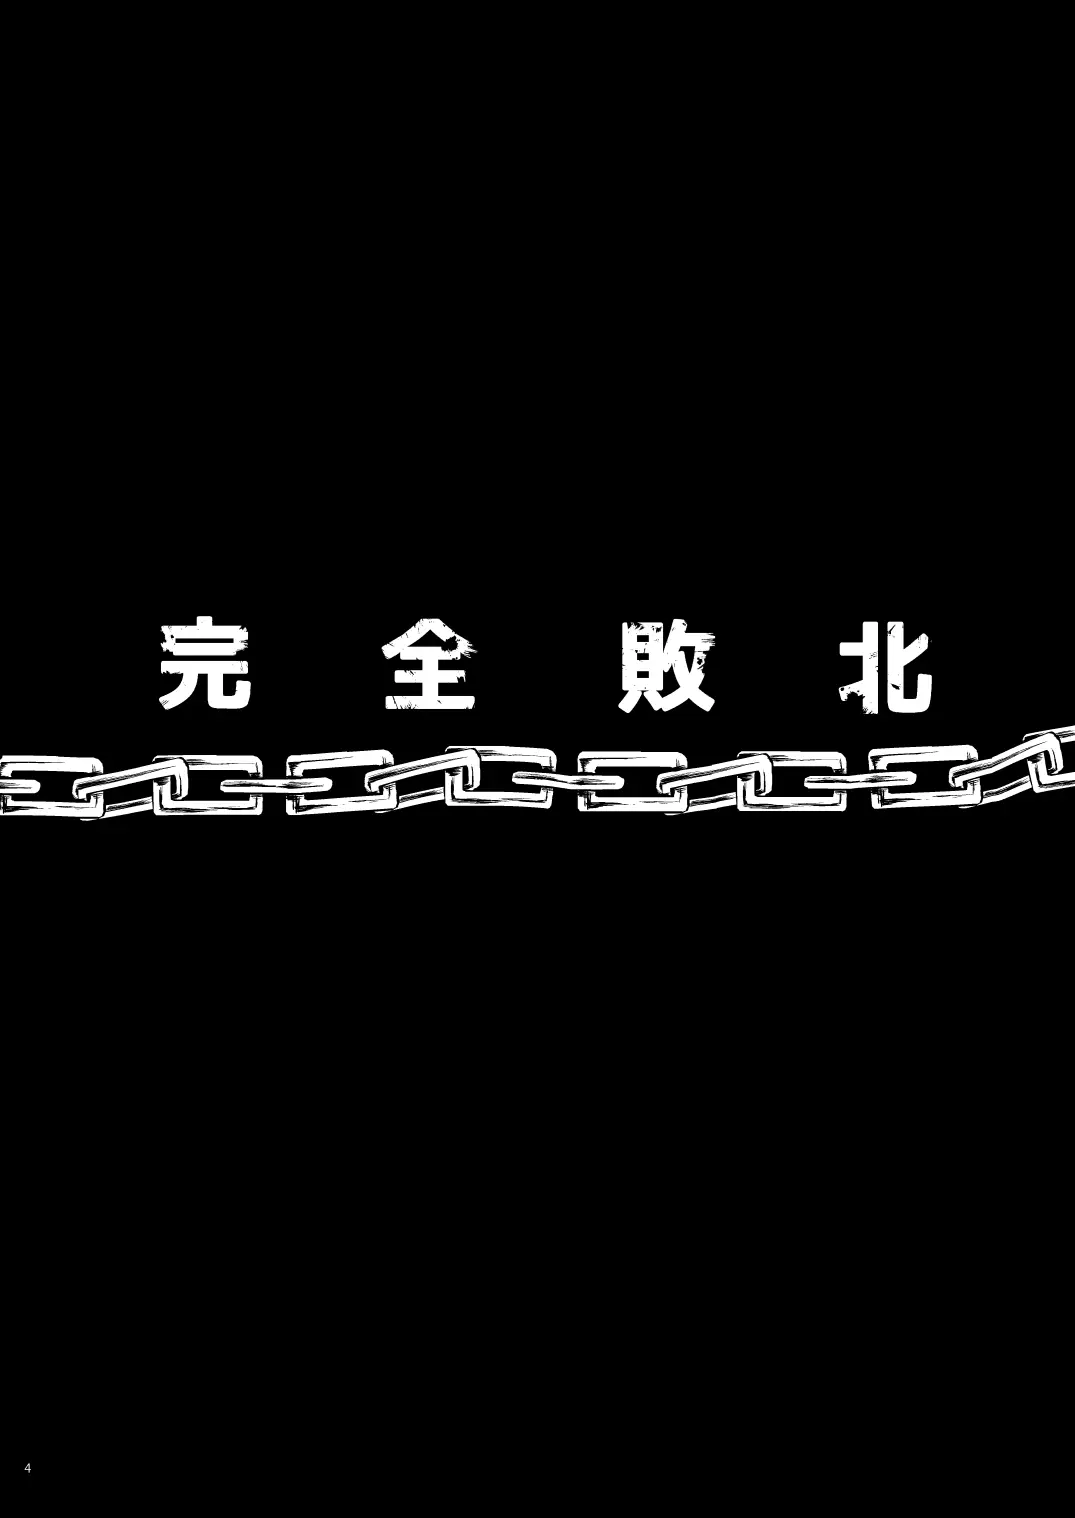 完全敗北愛玩戦士総集編 ドキドキ プリキュア-4